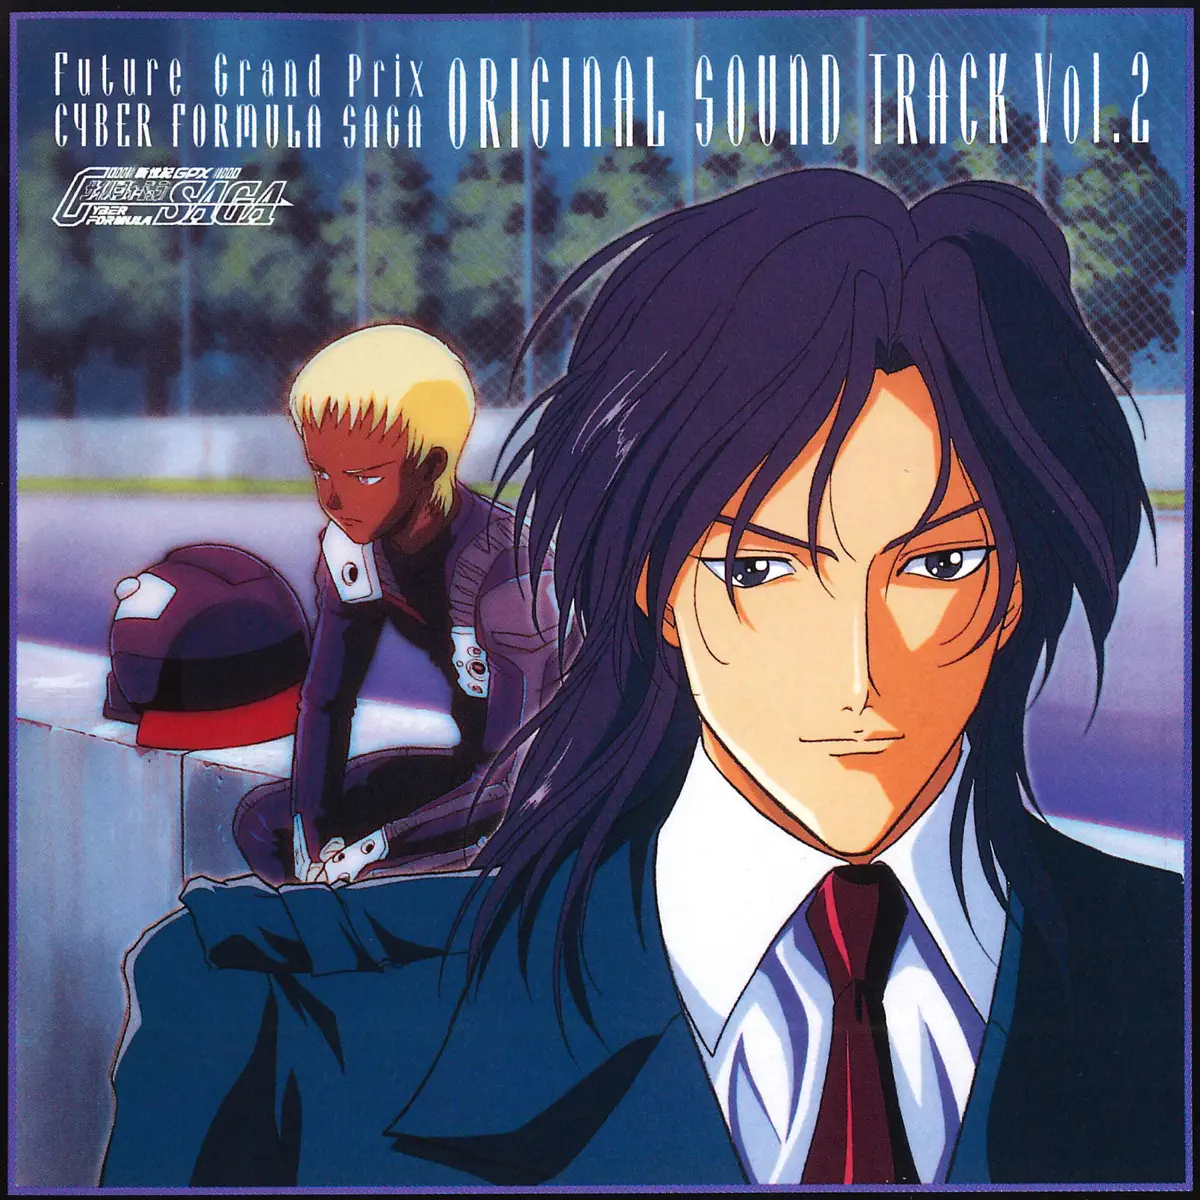 佐橋俊彦 - 新世紀GPXサイバーフォーミュラSAGA (Original Motion Picture Soundtrack, Vol. 2) (1996) [iTunes Plus AAC M4A]-新房子